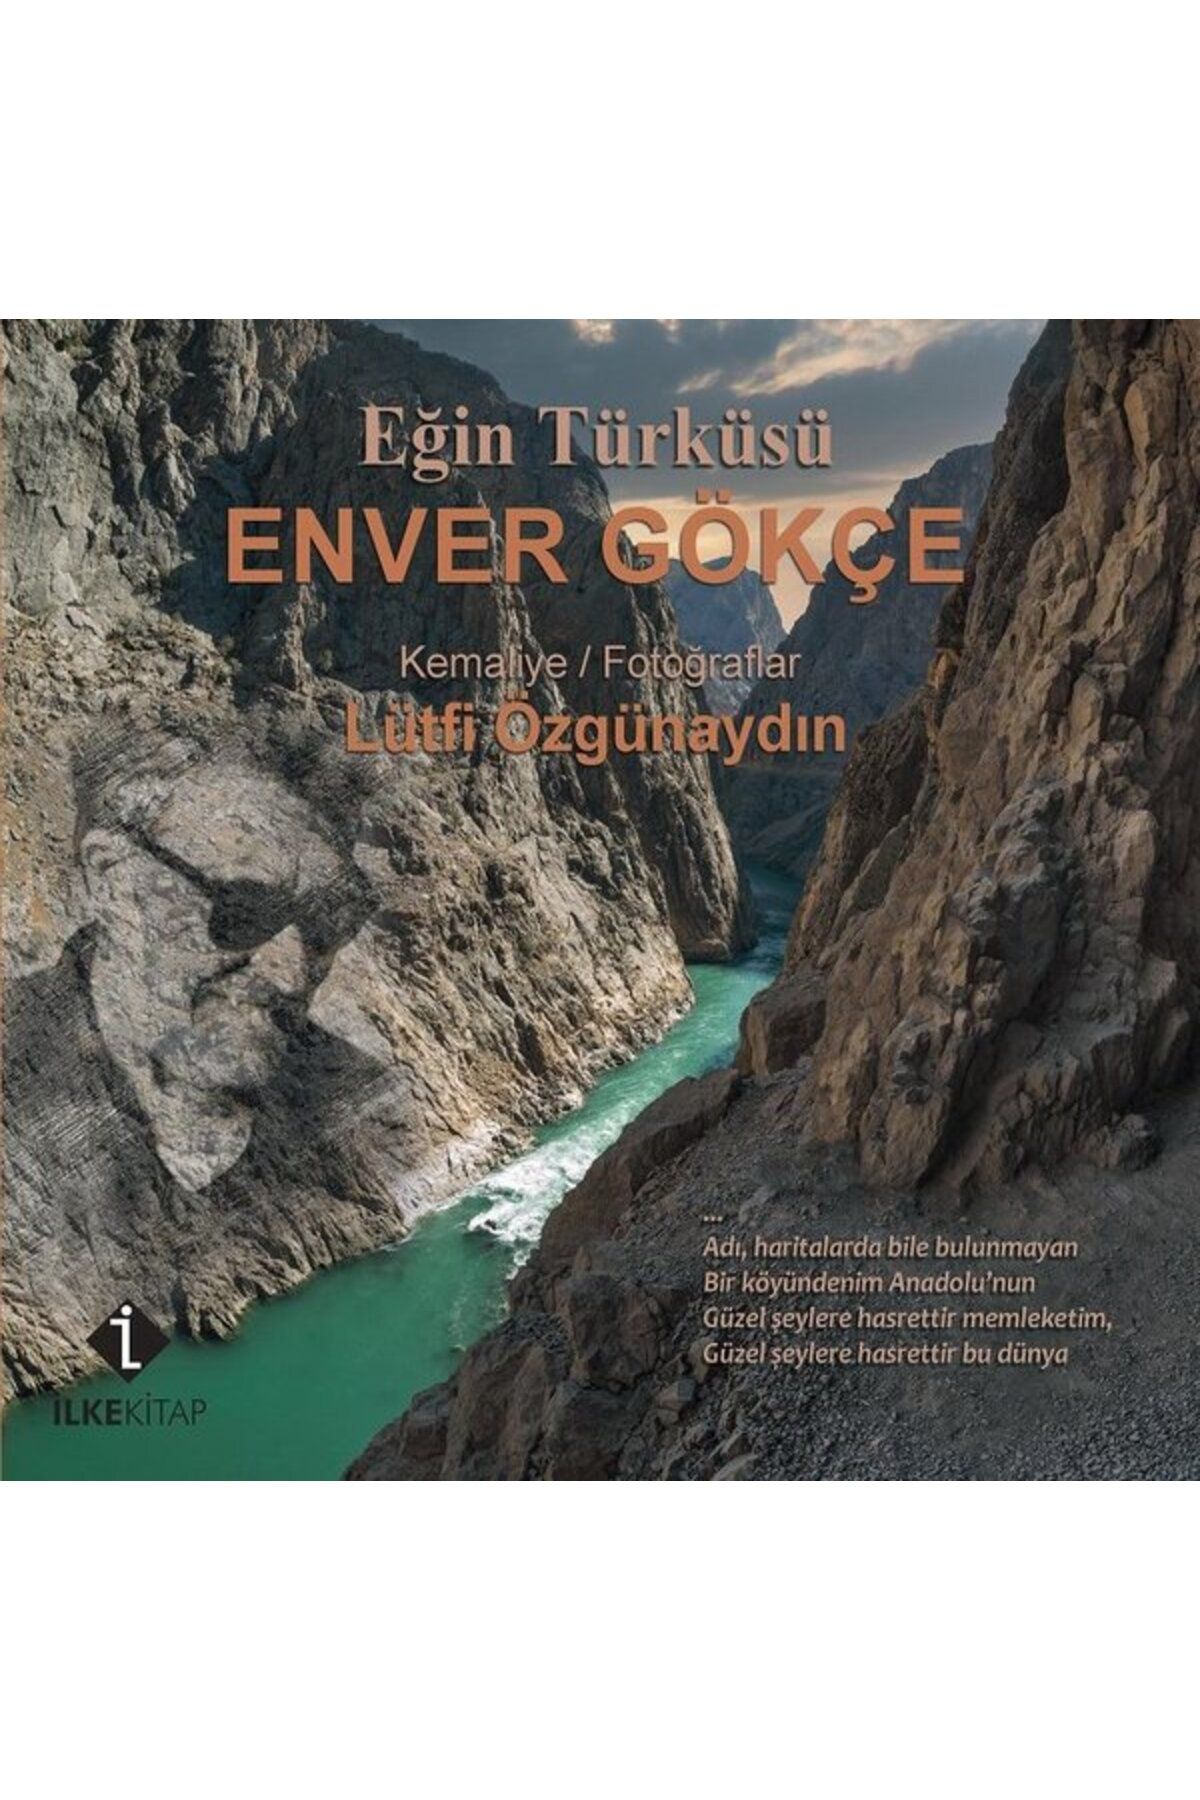 İlke Kitap Eğin Türküsü - Enver Gökçe - Kemaliye - Fotoğraflar